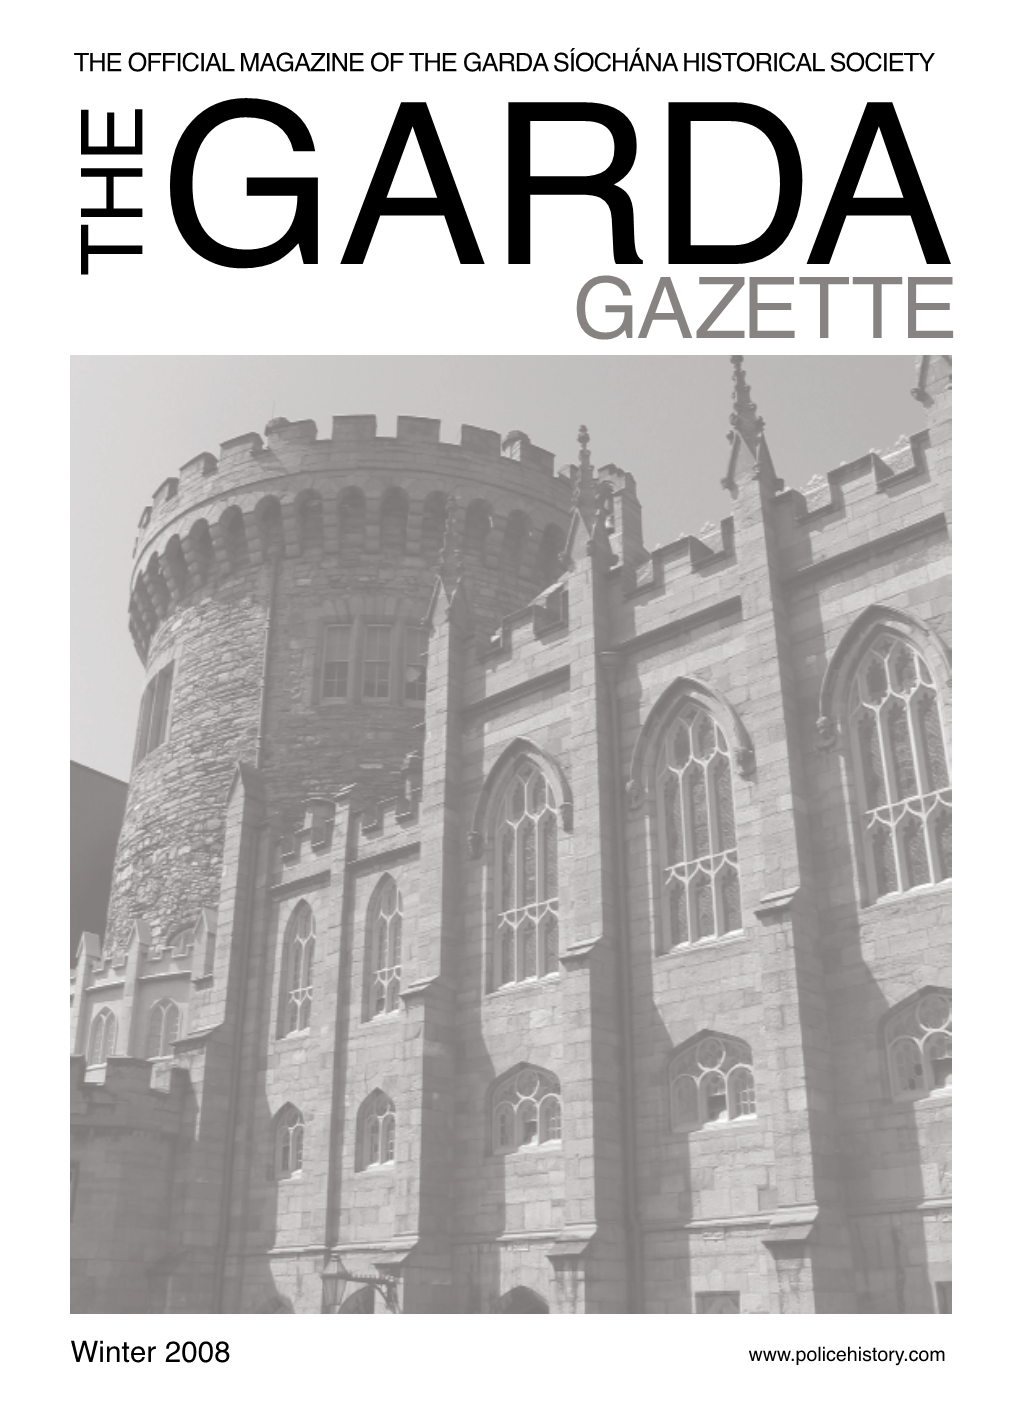 The Garda Gazette